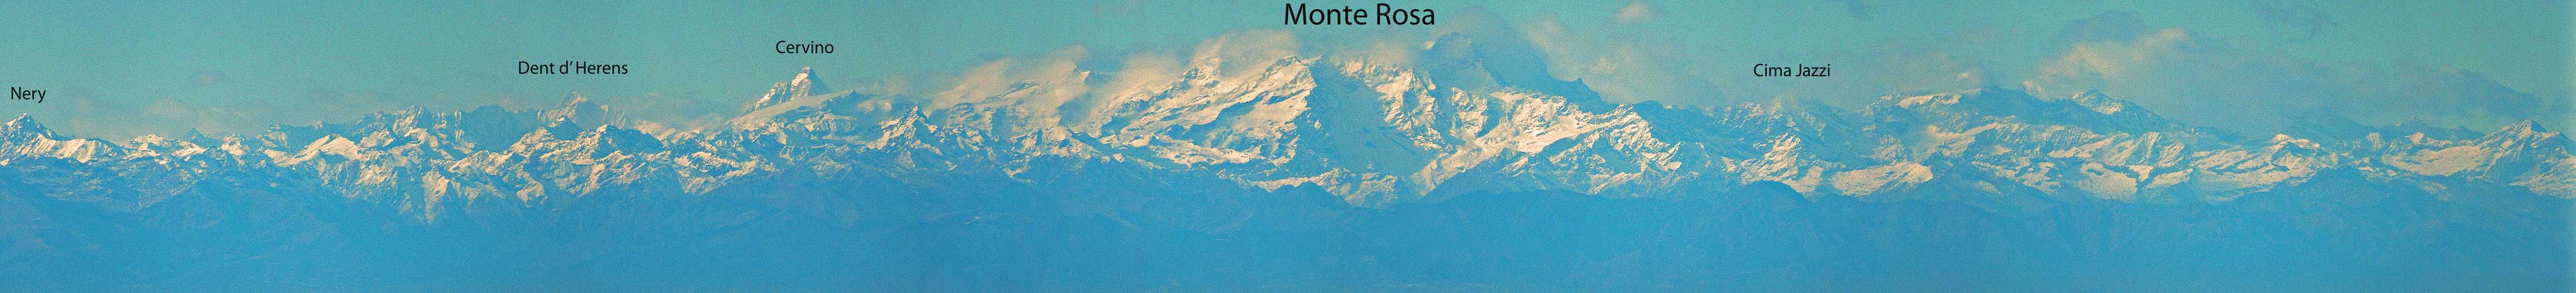 Monte Lesima